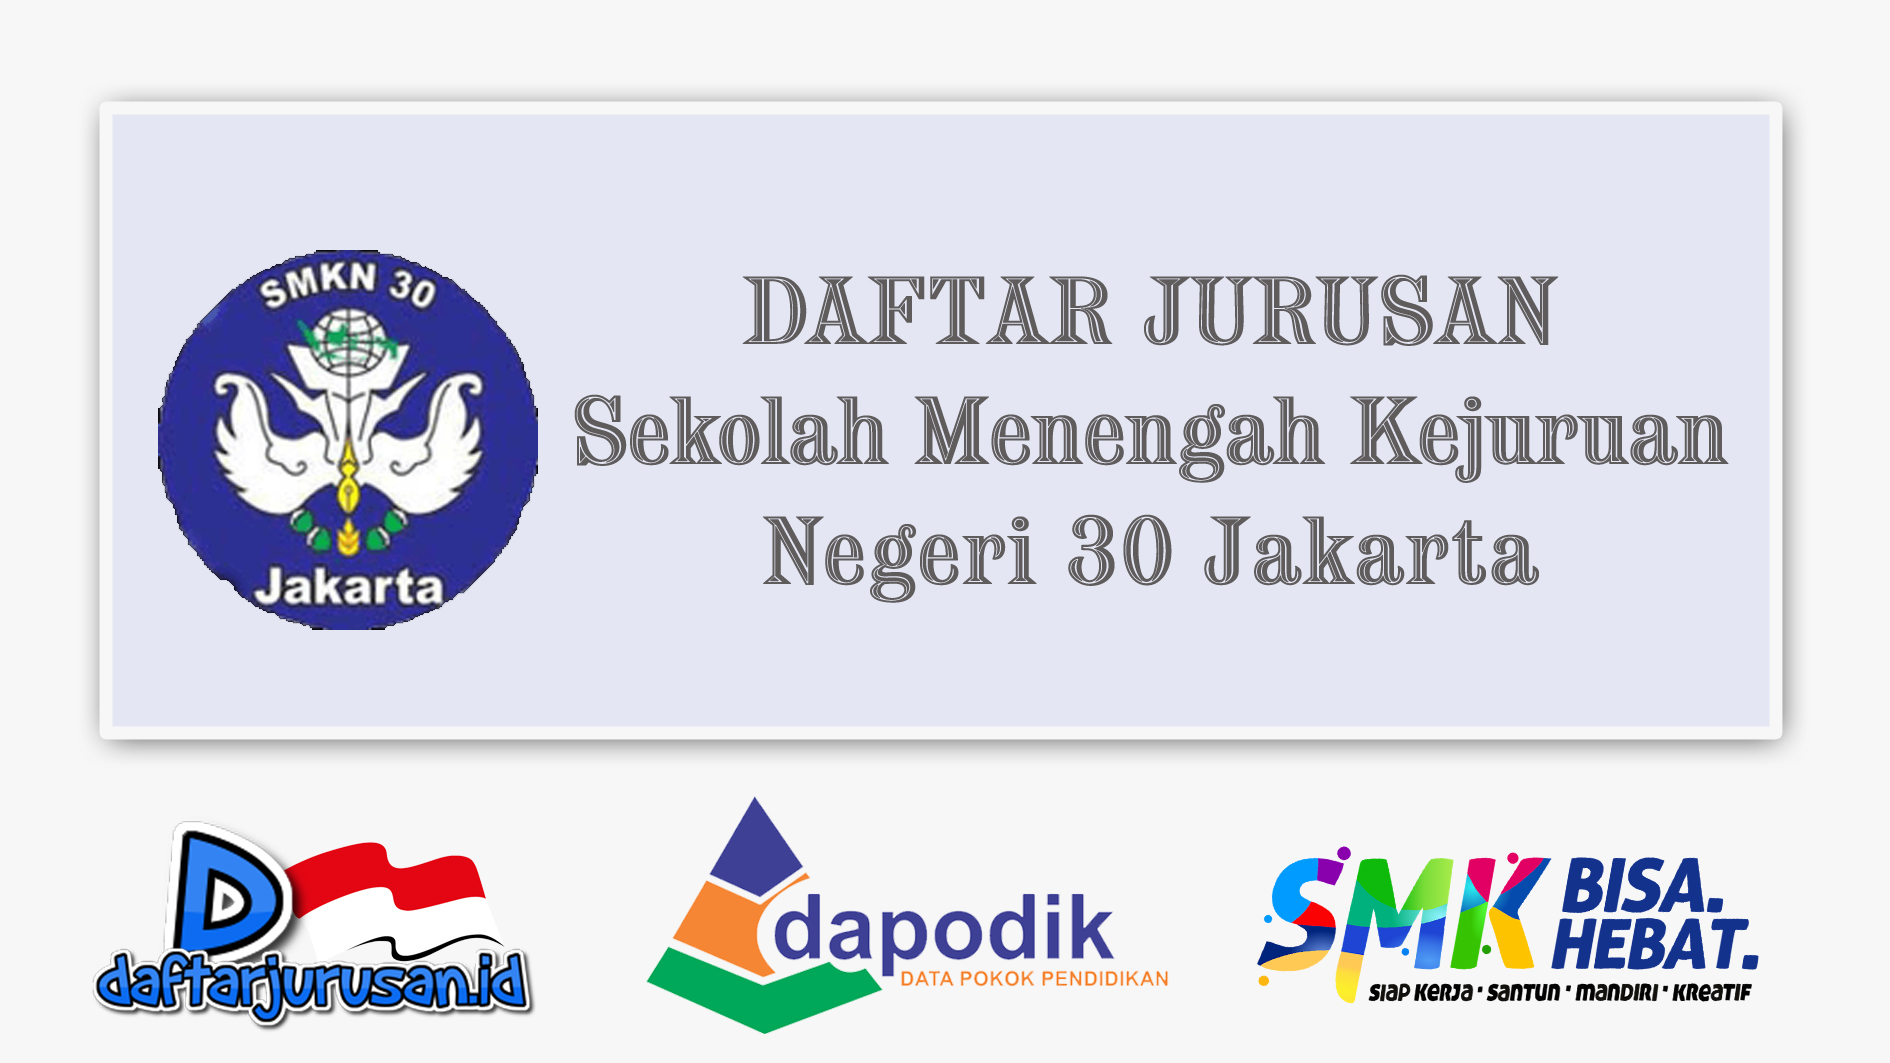 Daftar Jurusan SMK Negeri 30 Jakarta Selatan